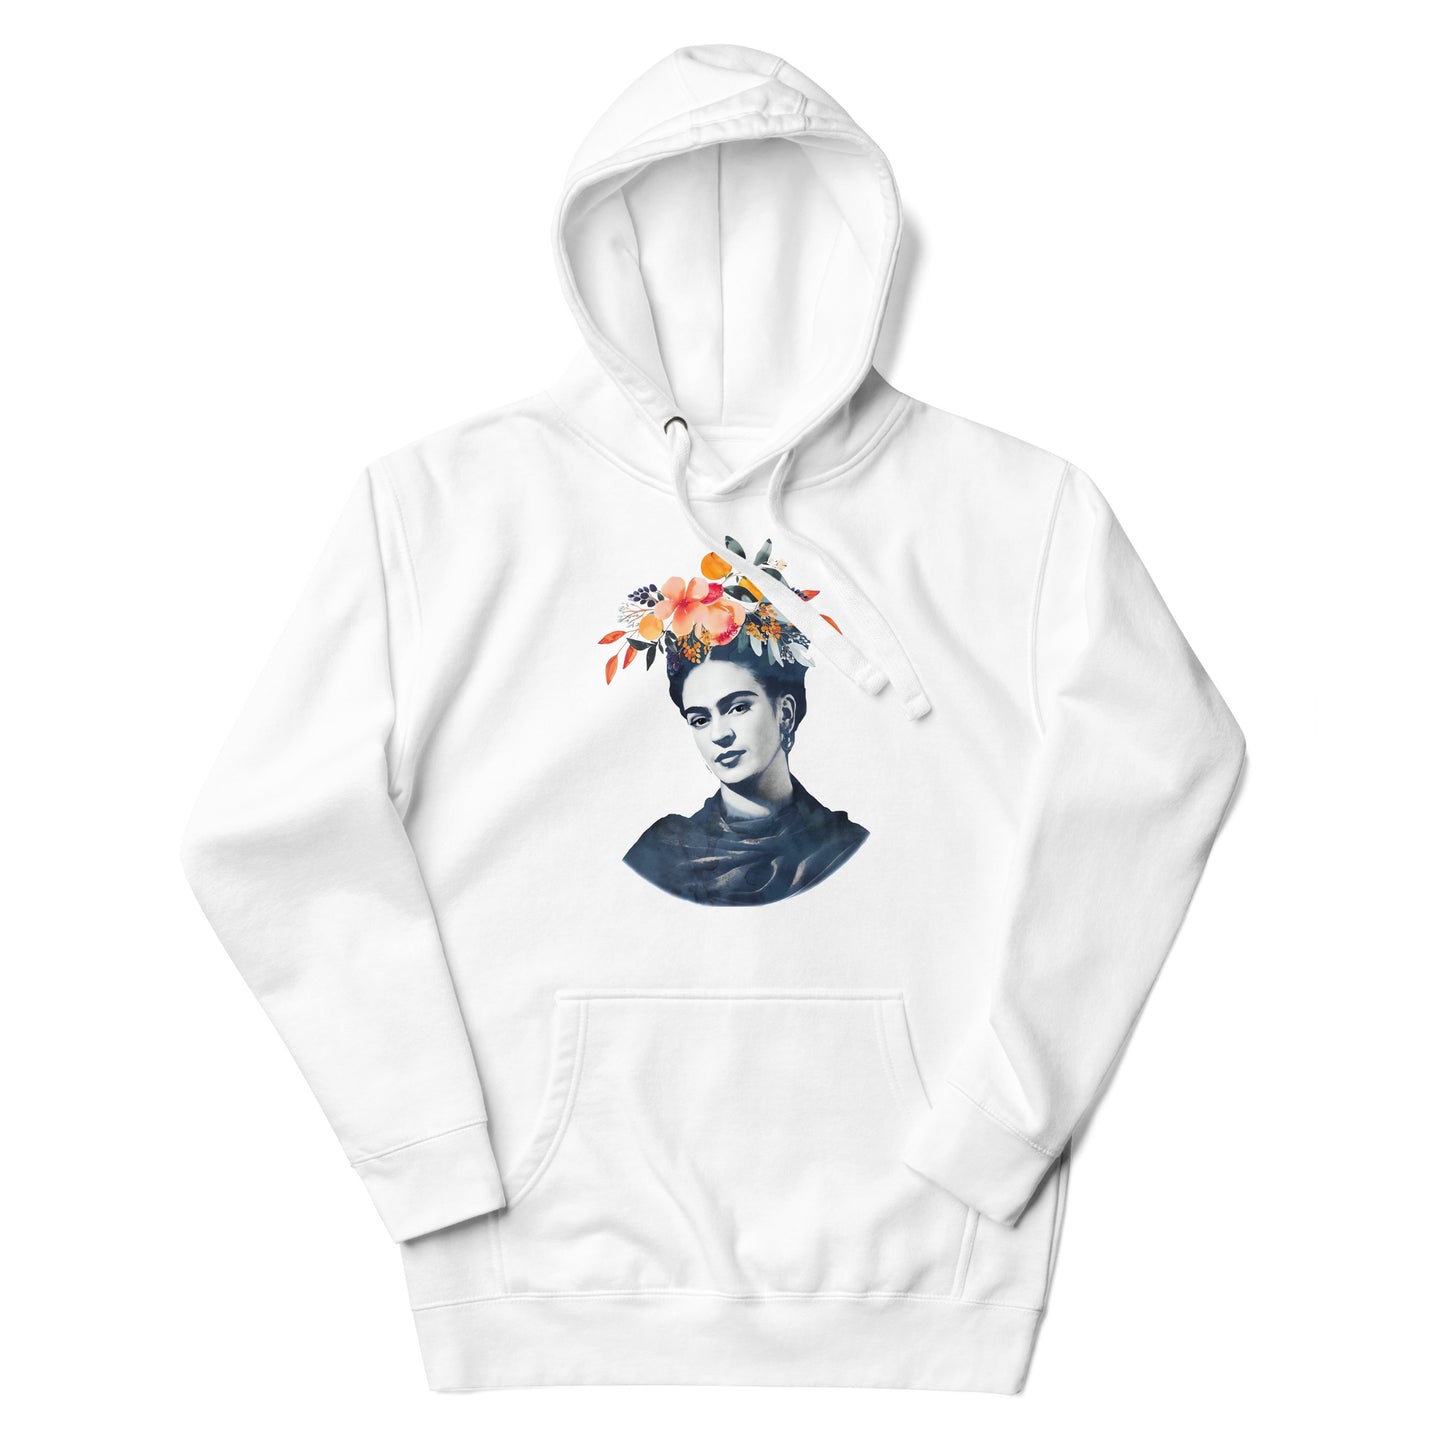 Hoodie de Frida Flowers ,Descubre calidad excepcional y estampados duraderos. Encuentra estilo y orgullo en cada prenda. Compra ahora!